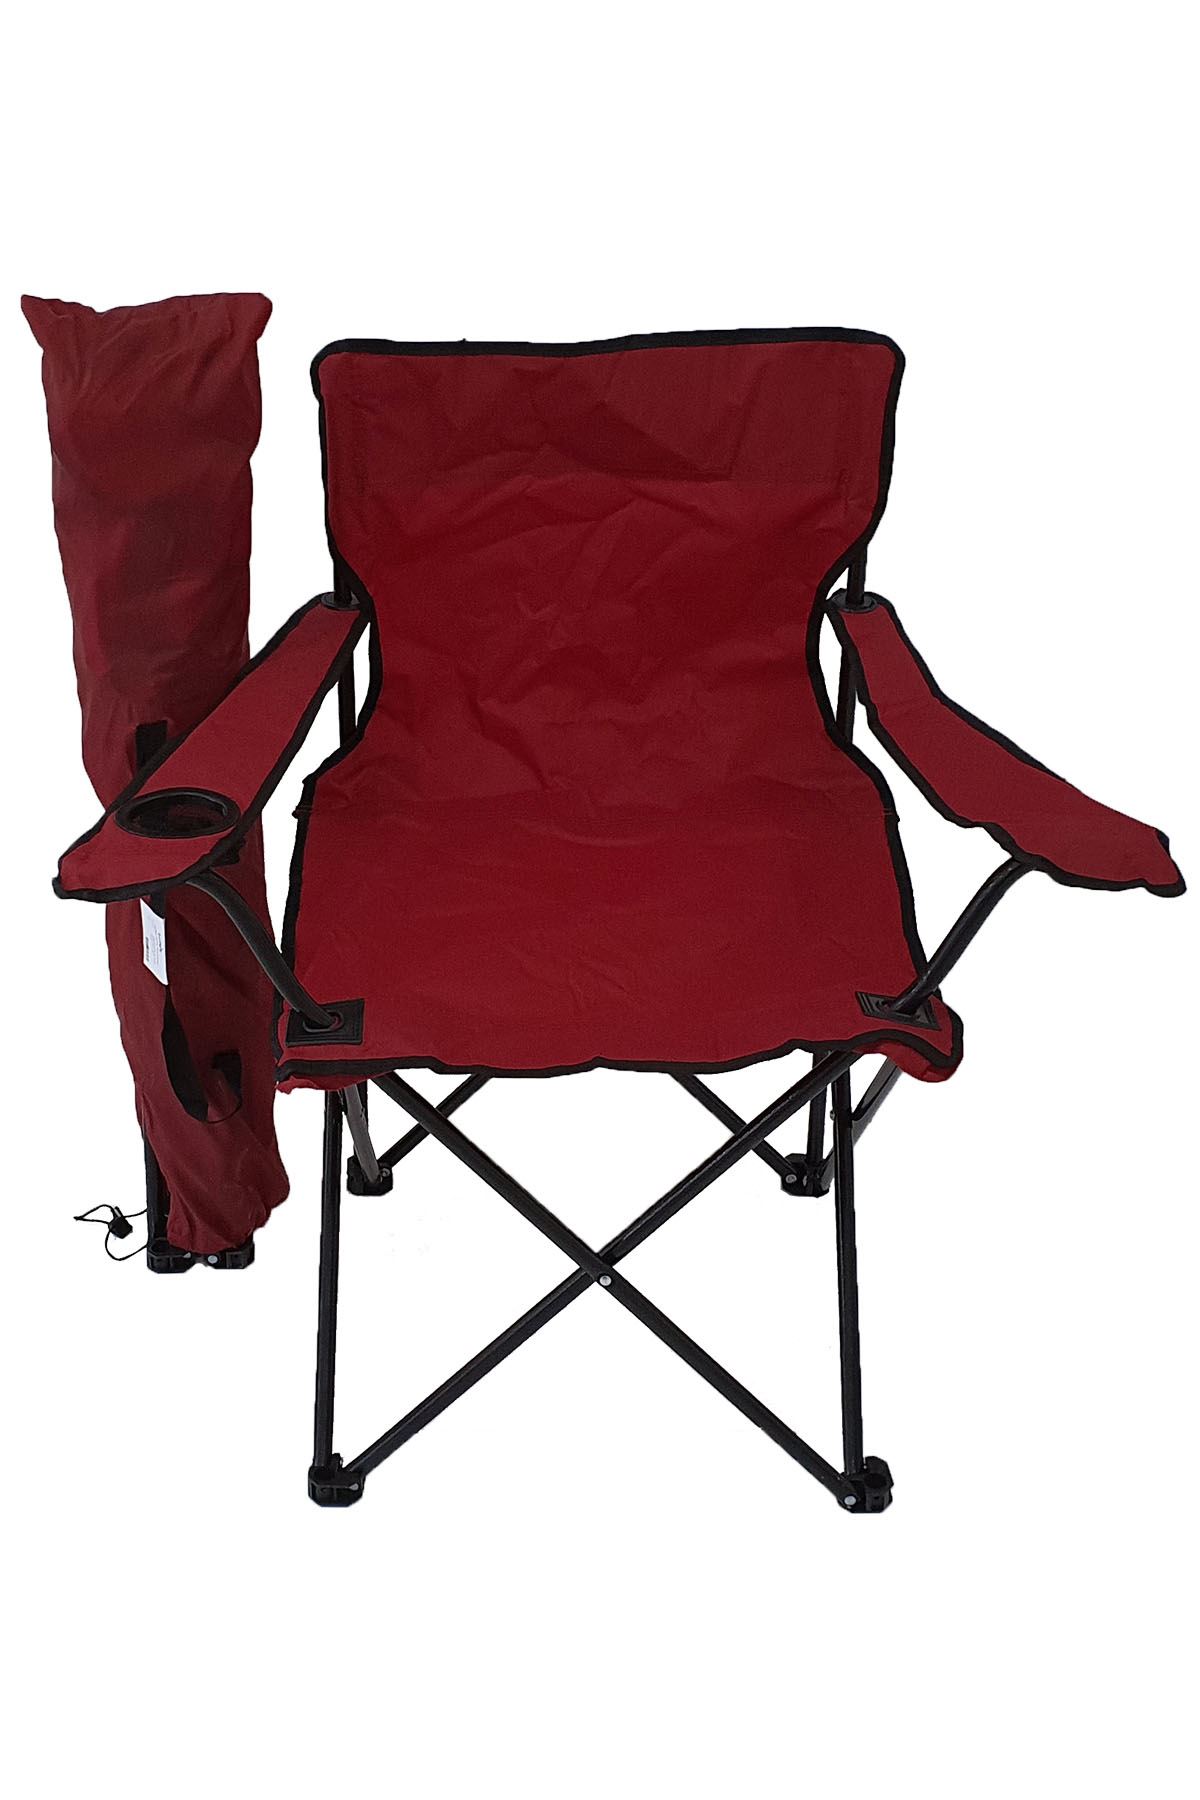 Bofigo Camping Chair Folding Chair Garden Chair Picnic Beach Balcony Chair Red